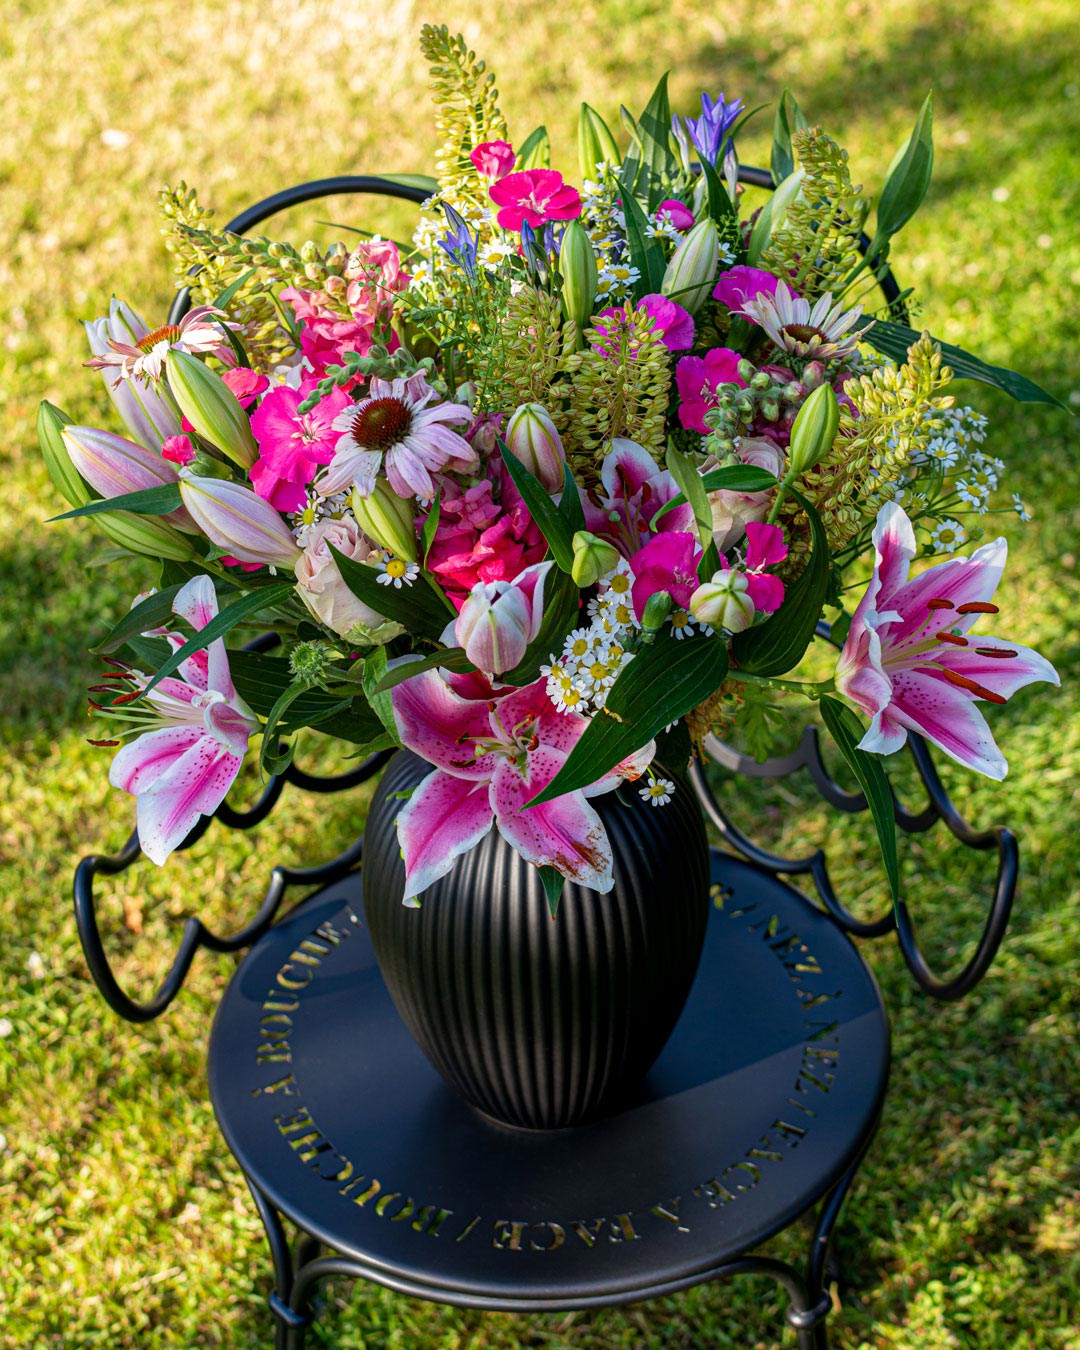 Sort vase fra Michael Andersen Keramik med blomster på smedejernsstol i haven